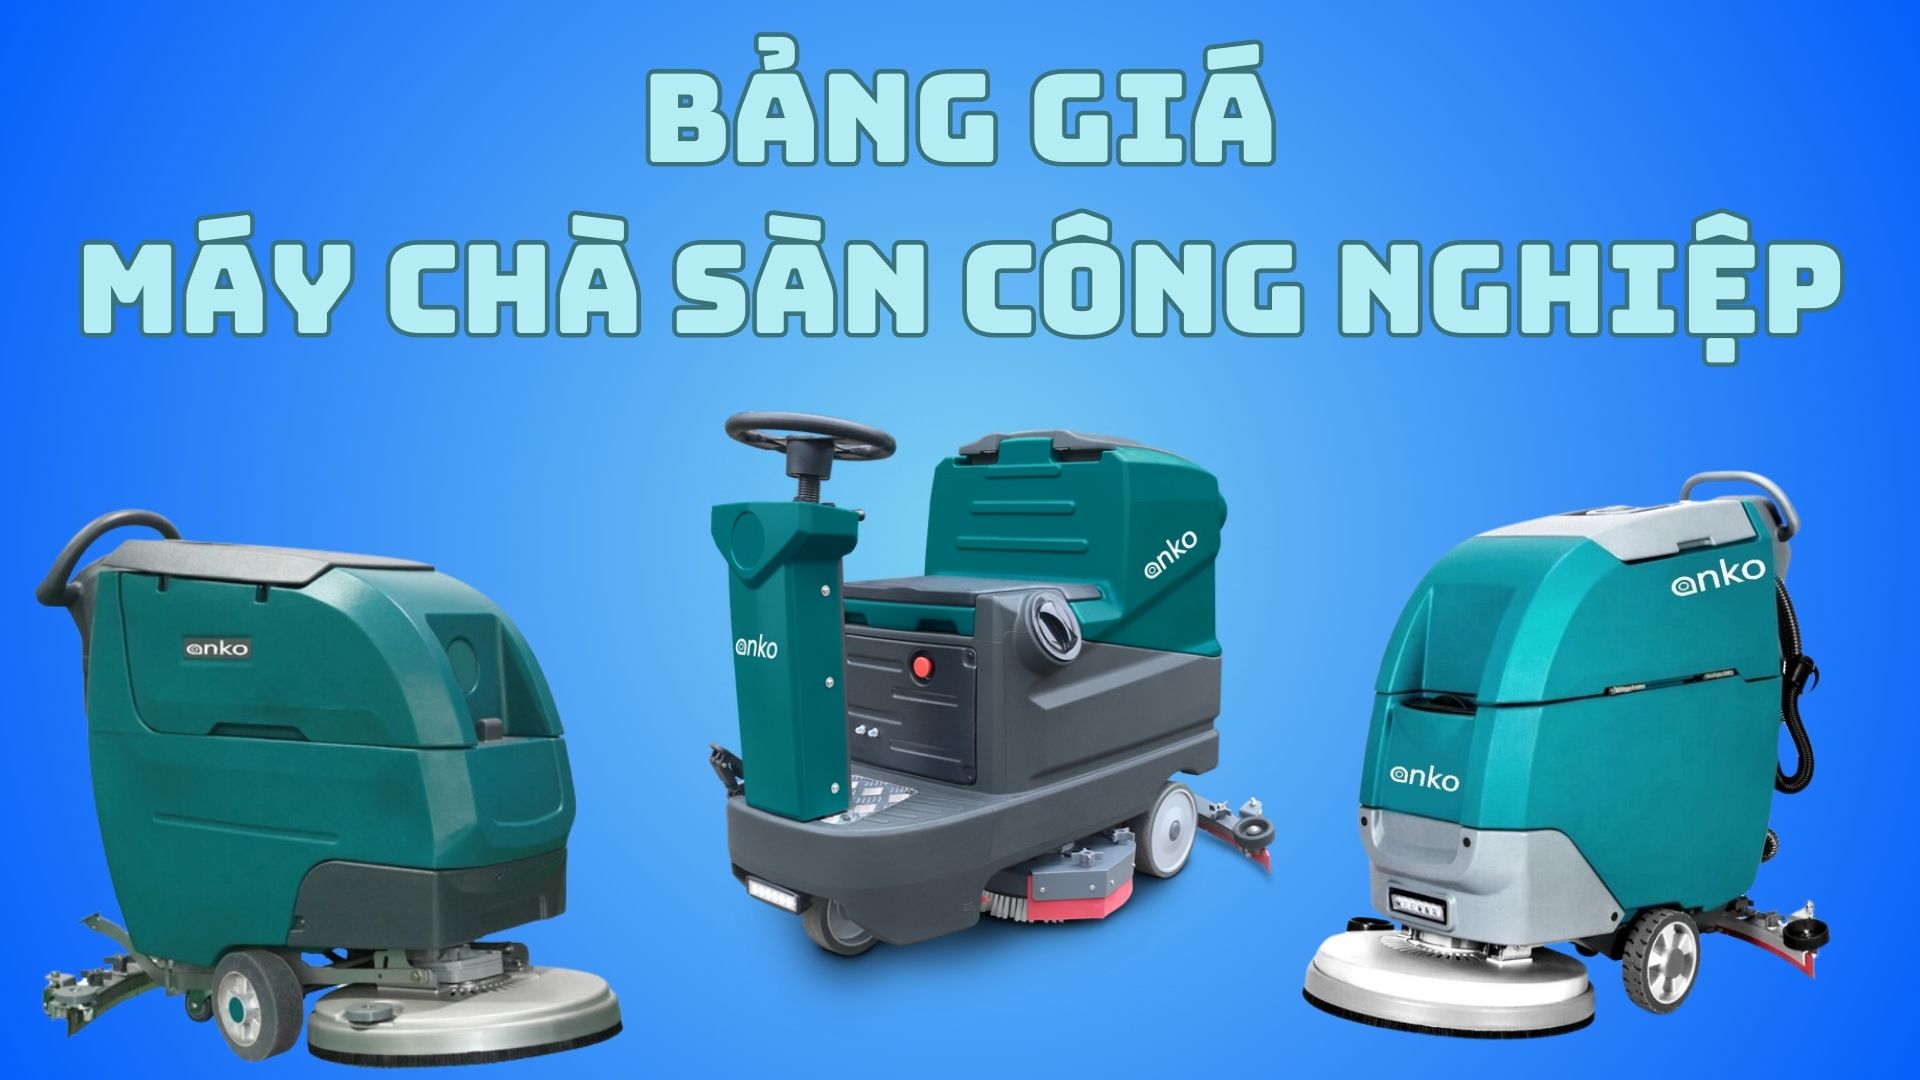 [Tổng hợp] Bảng giá máy chà sàn công nghiệp tại HN, HCM, Đà Nẵng